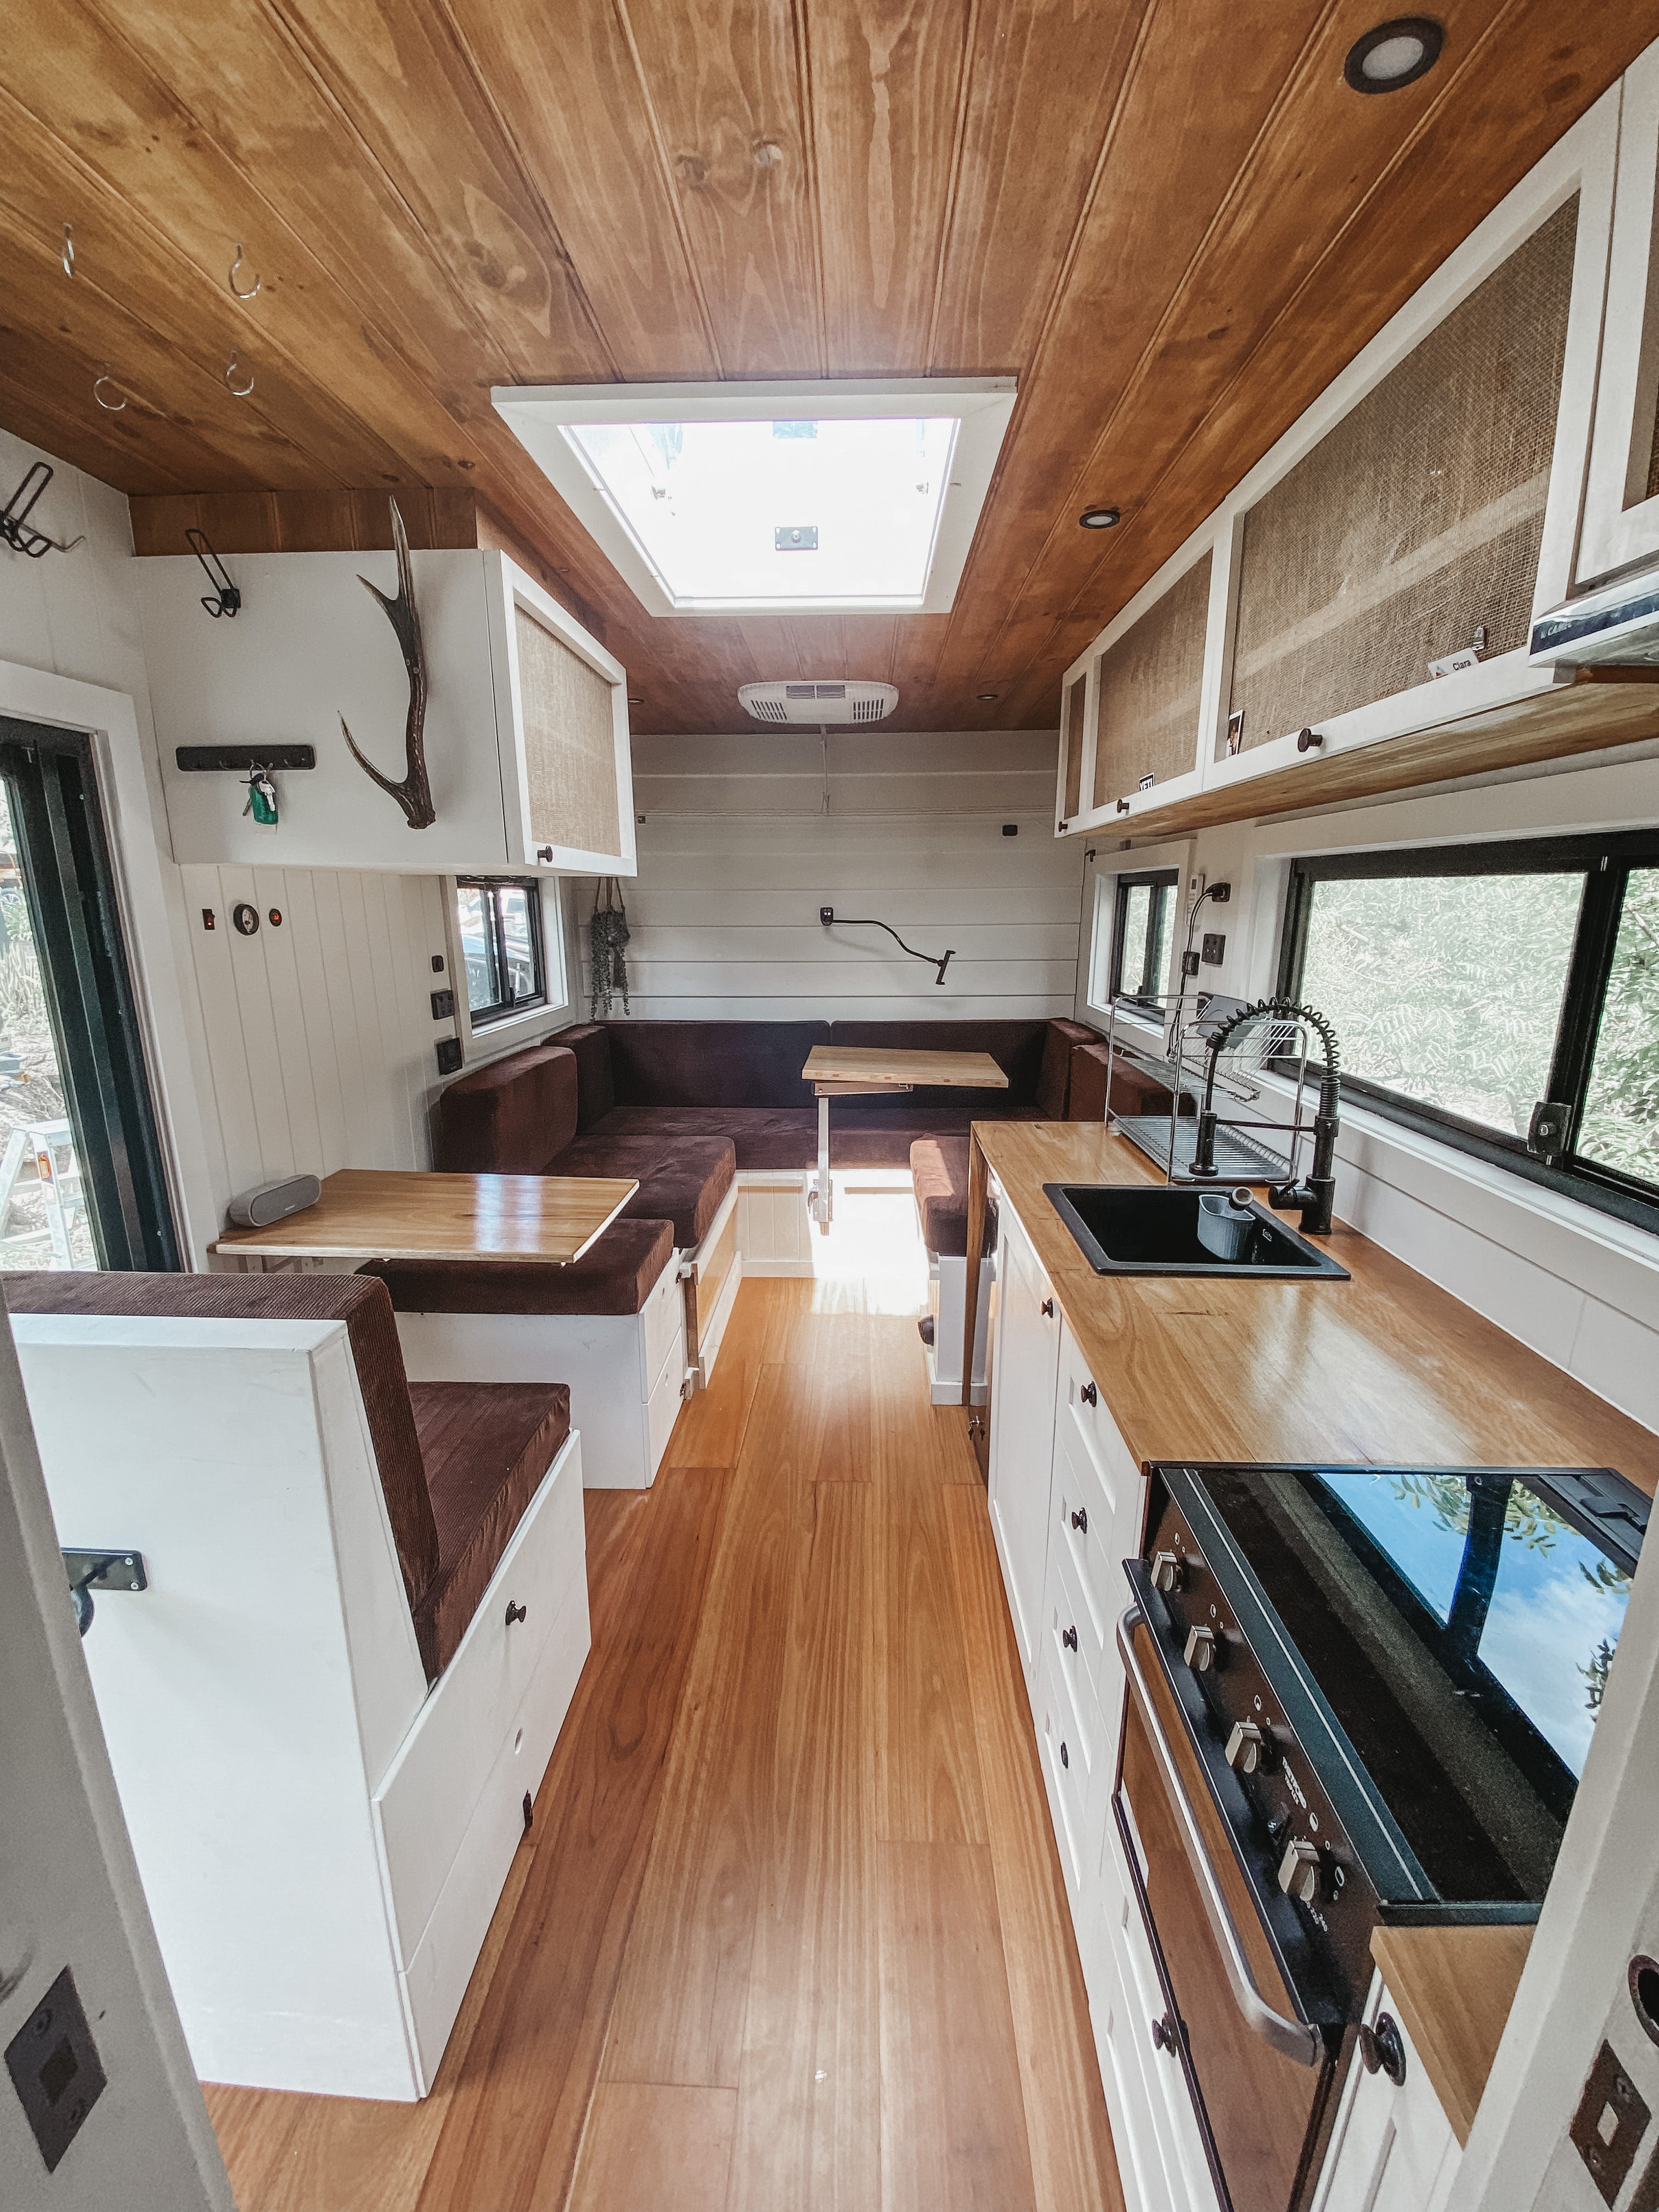 Eine lange Ansicht des Inneren des Lastwagens, wo Sie den Ess- und Wohnbereich und die Küche sehen können